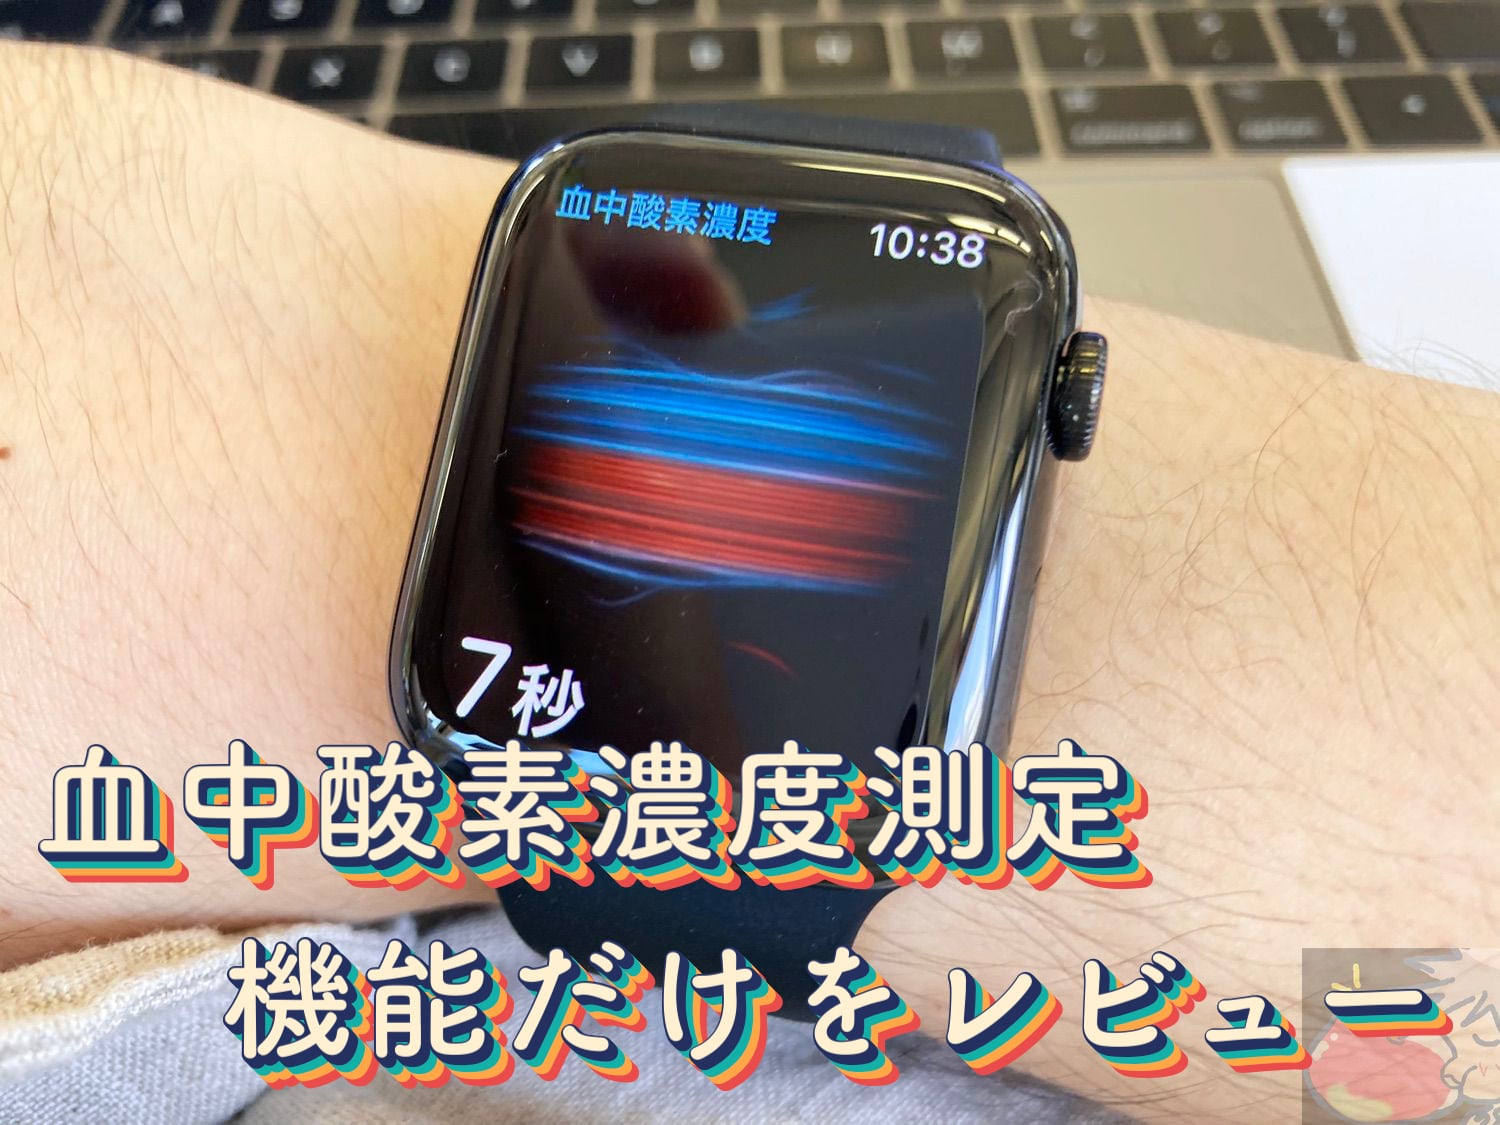 血中酸素濃度の測定機能だけをレビュー【Apple Watch Series 6】